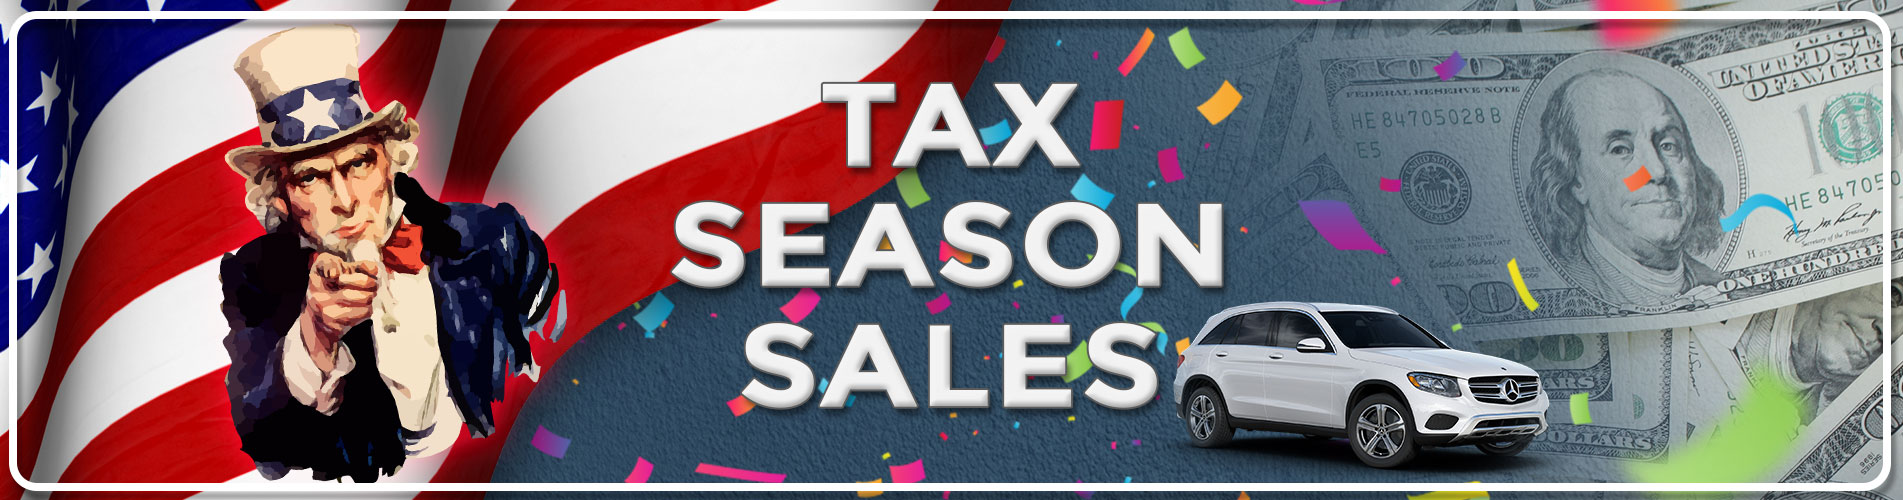 Tax Season Sales